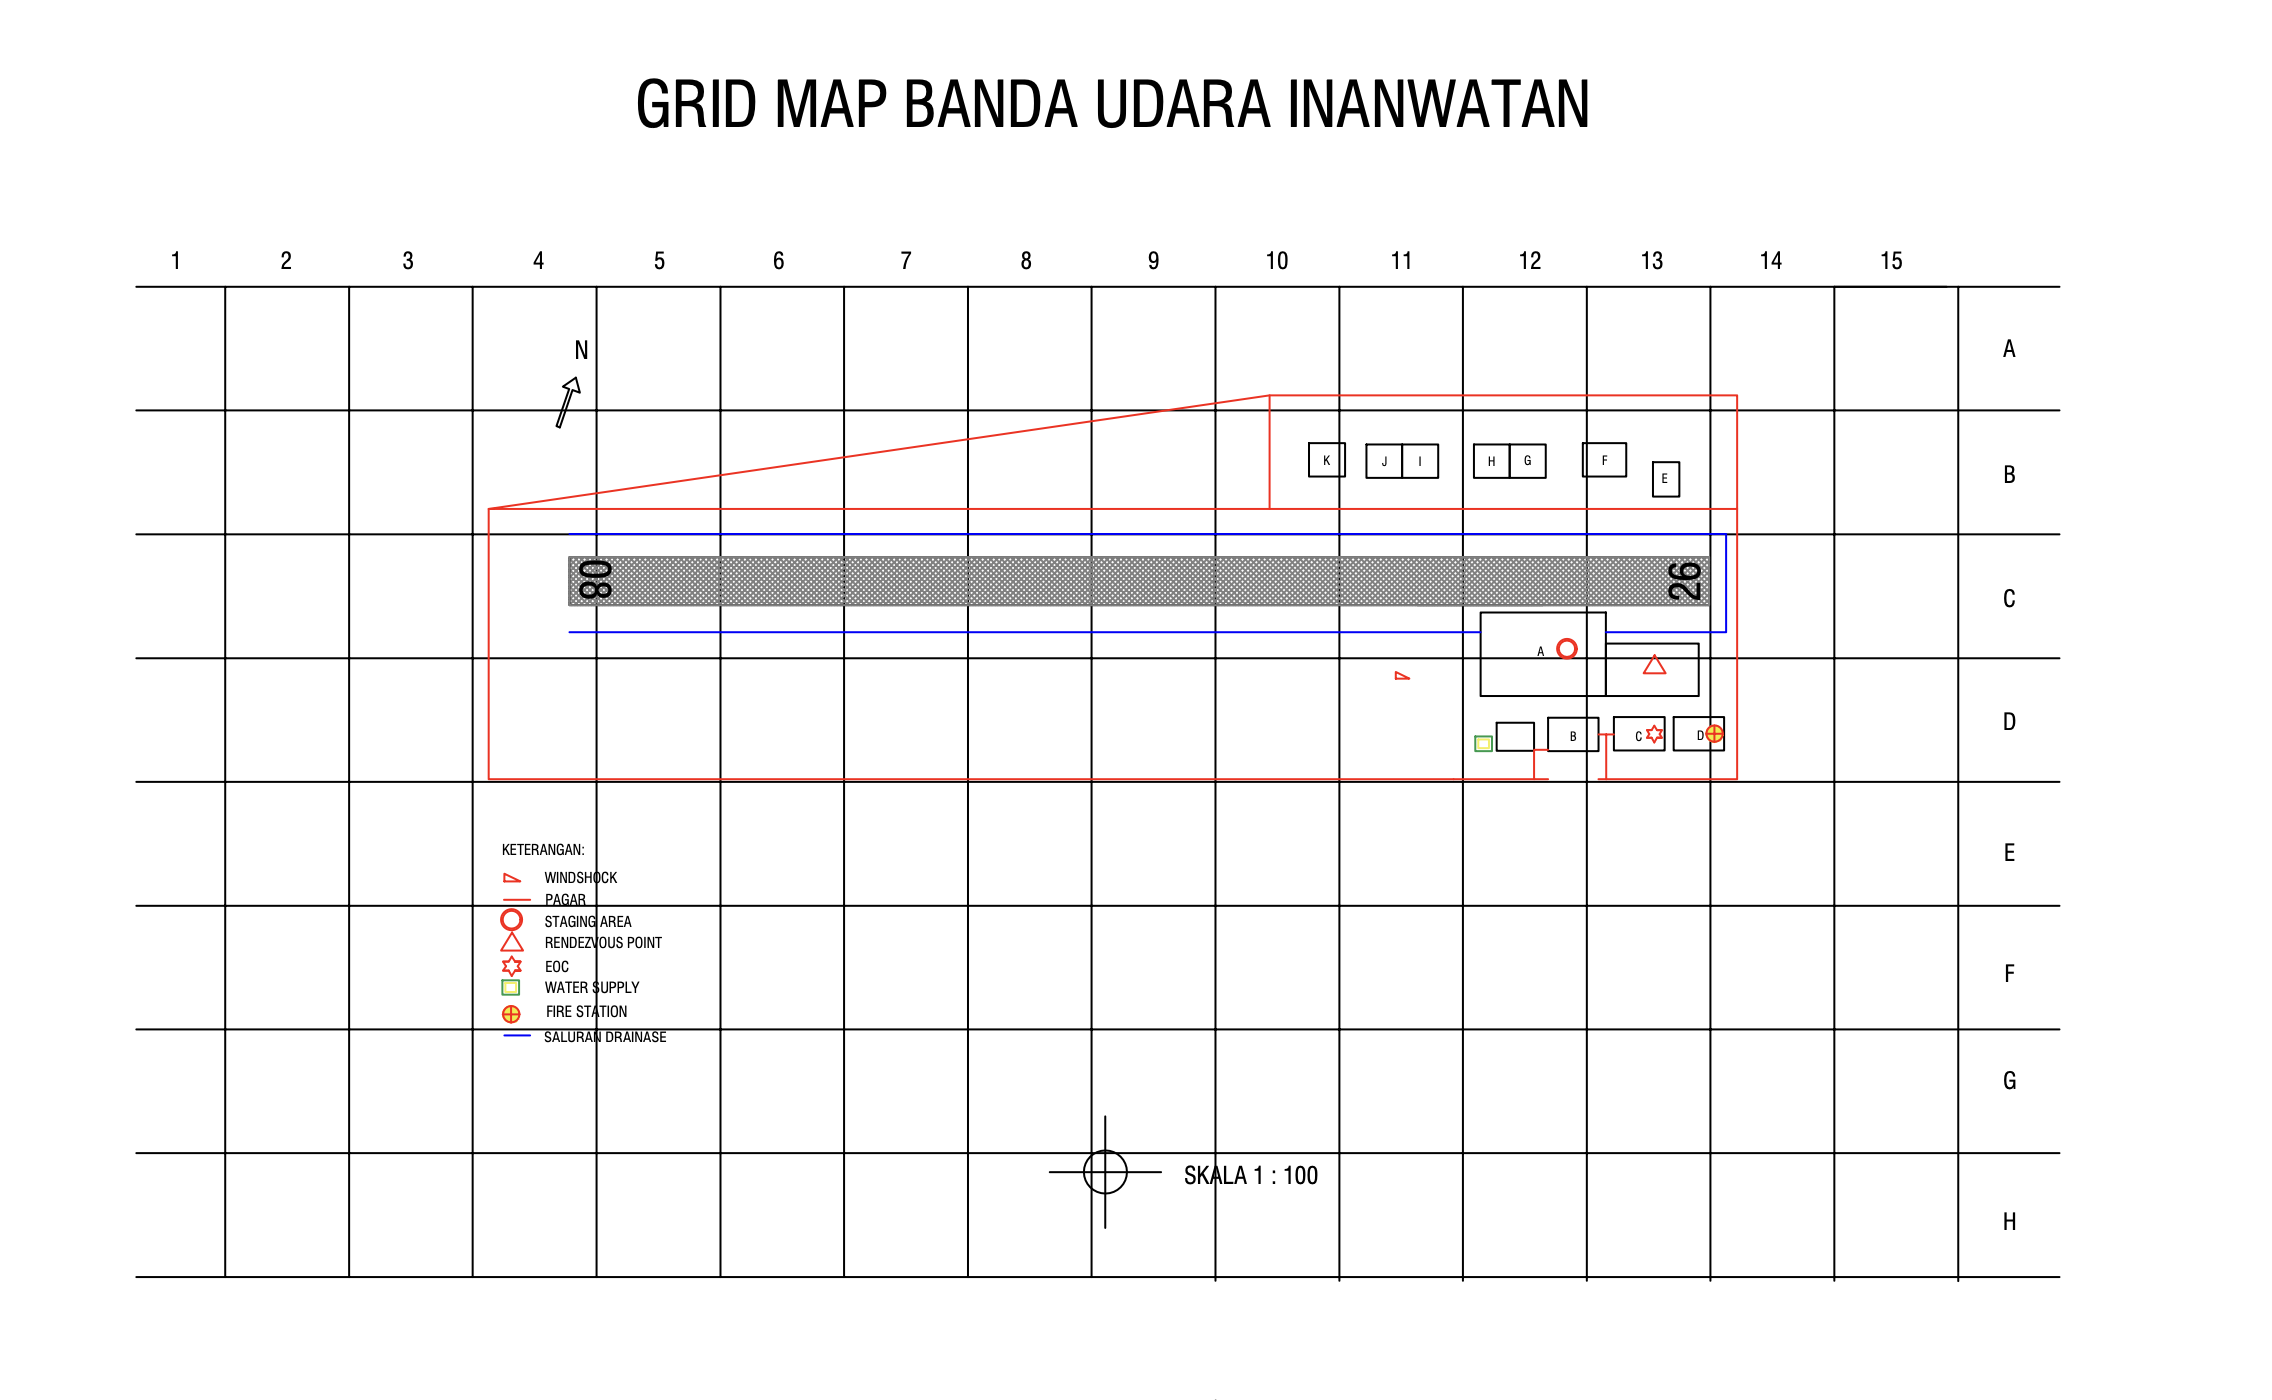 Gambar Peta Bandara Grid Map Bandar Udara Inanwatan